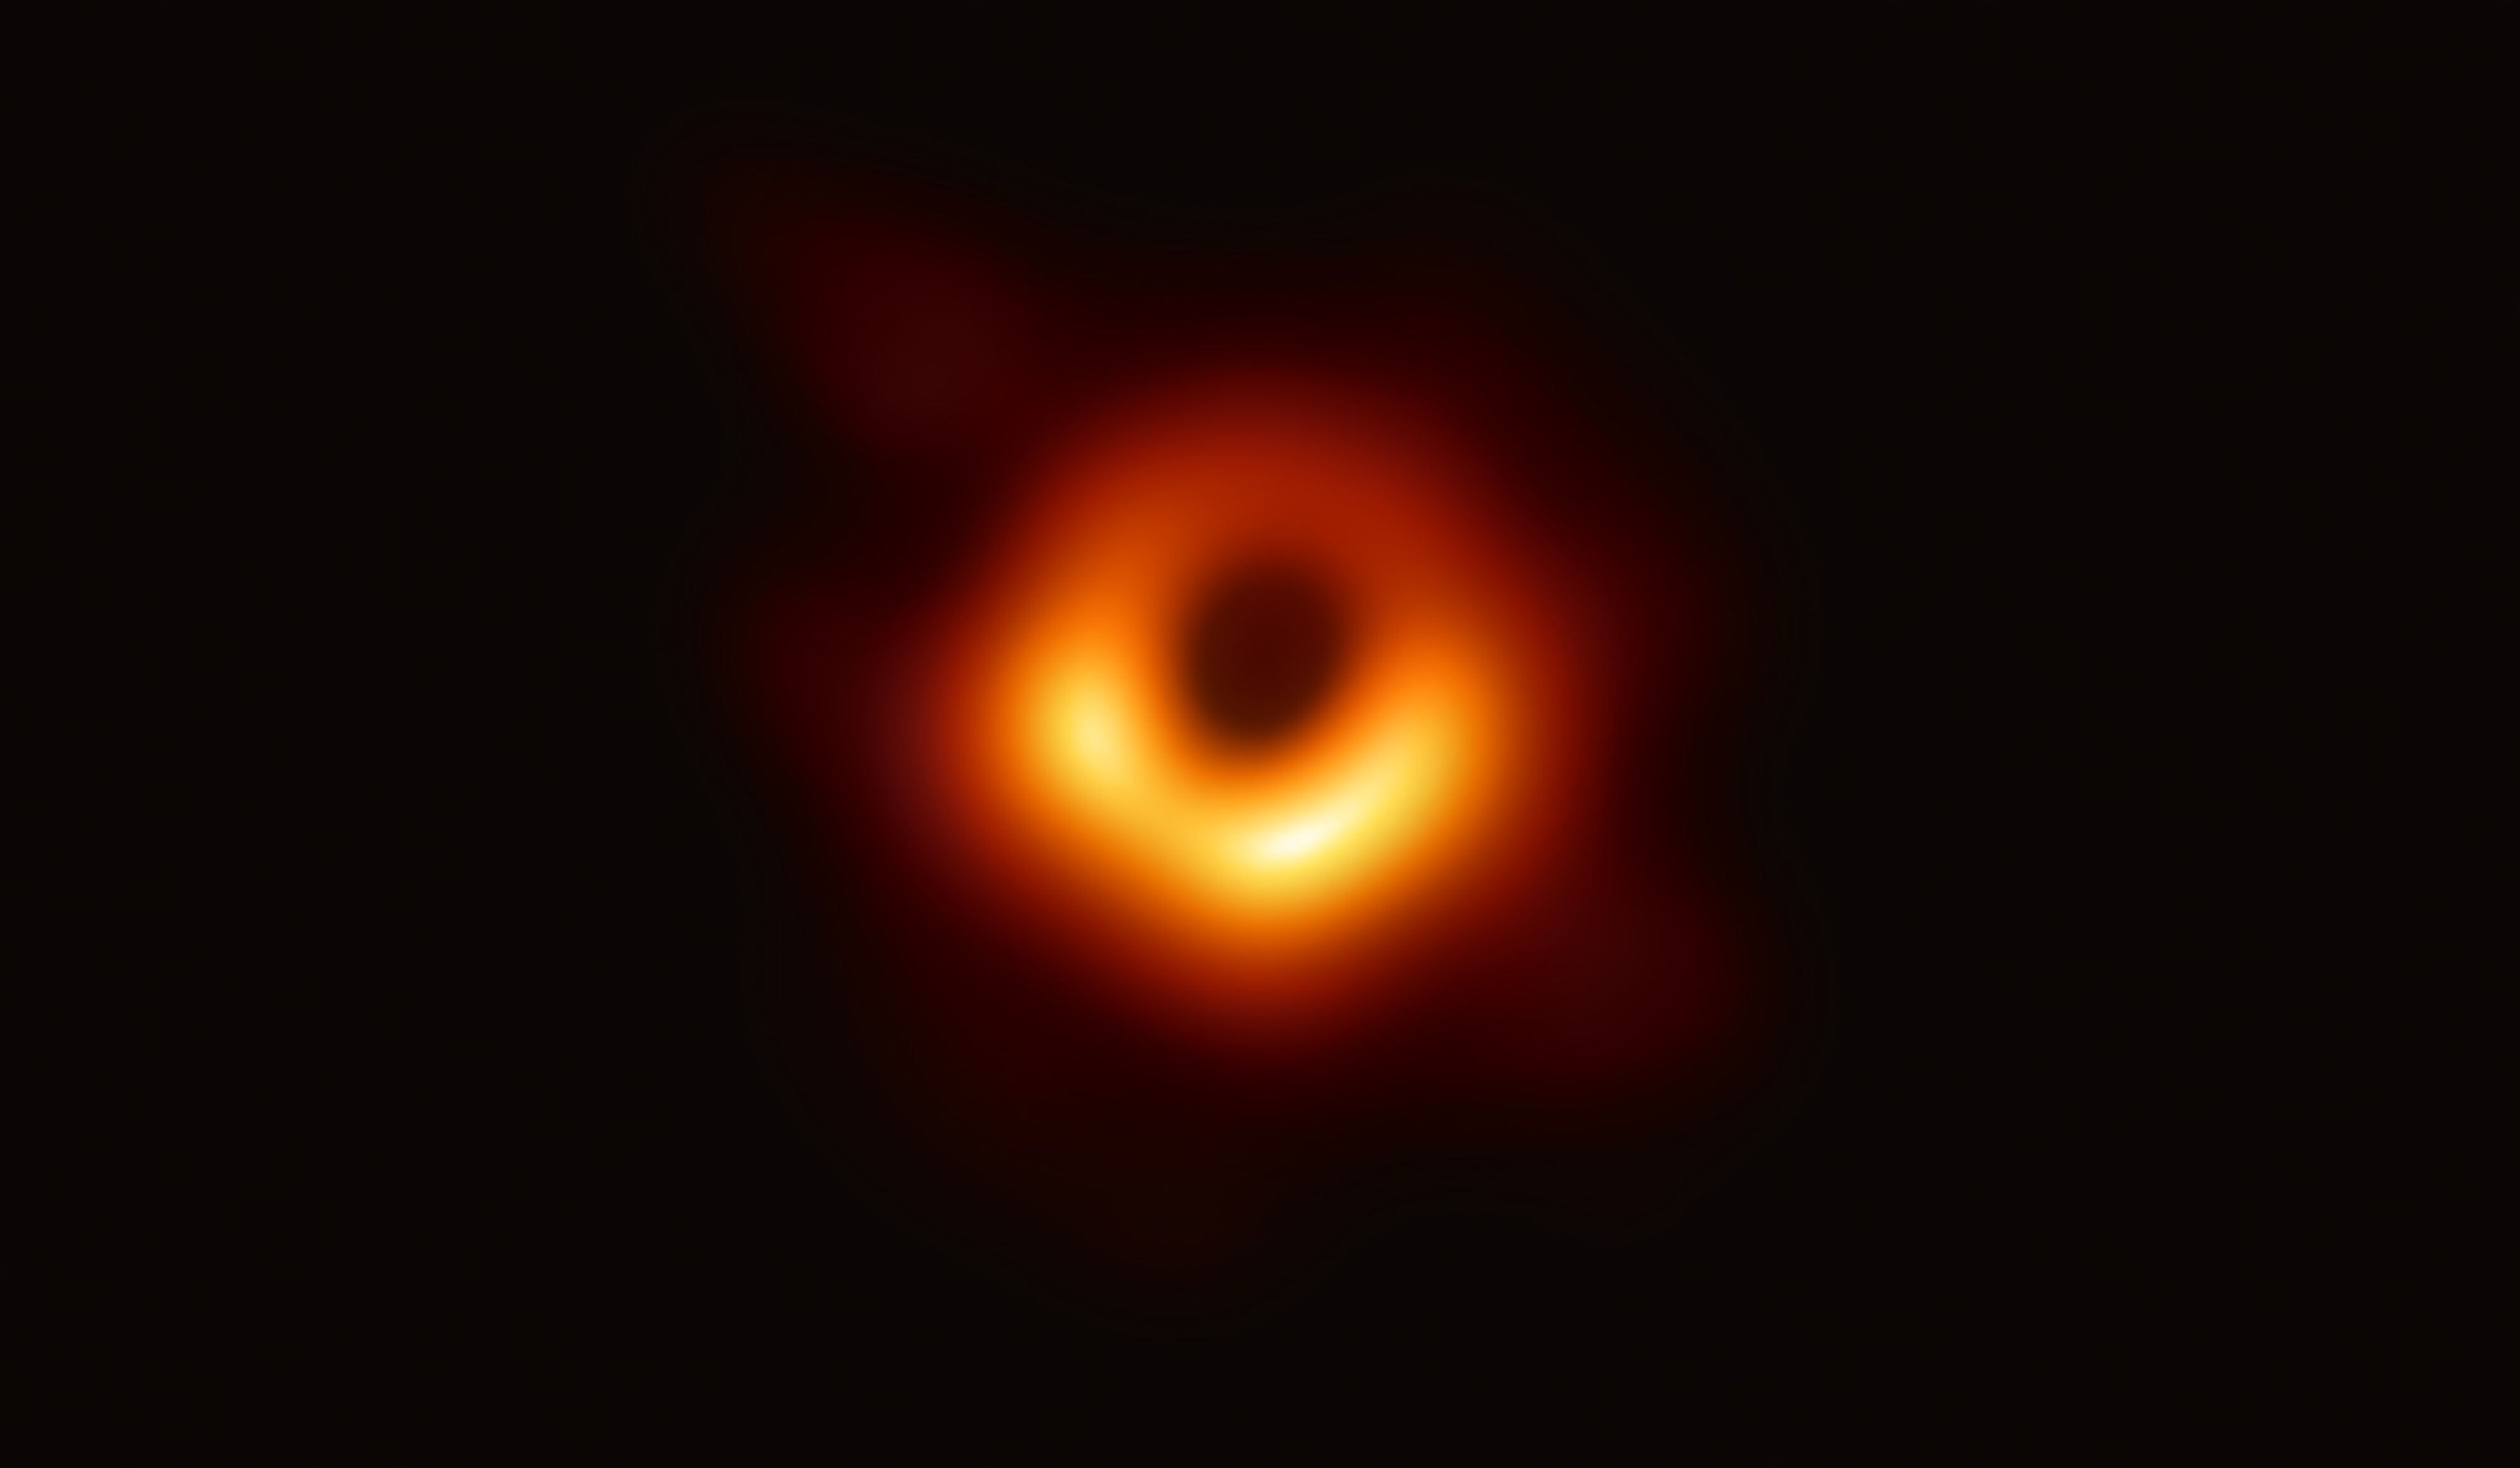 astrónomos descubren cómo se alimenta el aterrador agujero negro supermasivo de andrómeda